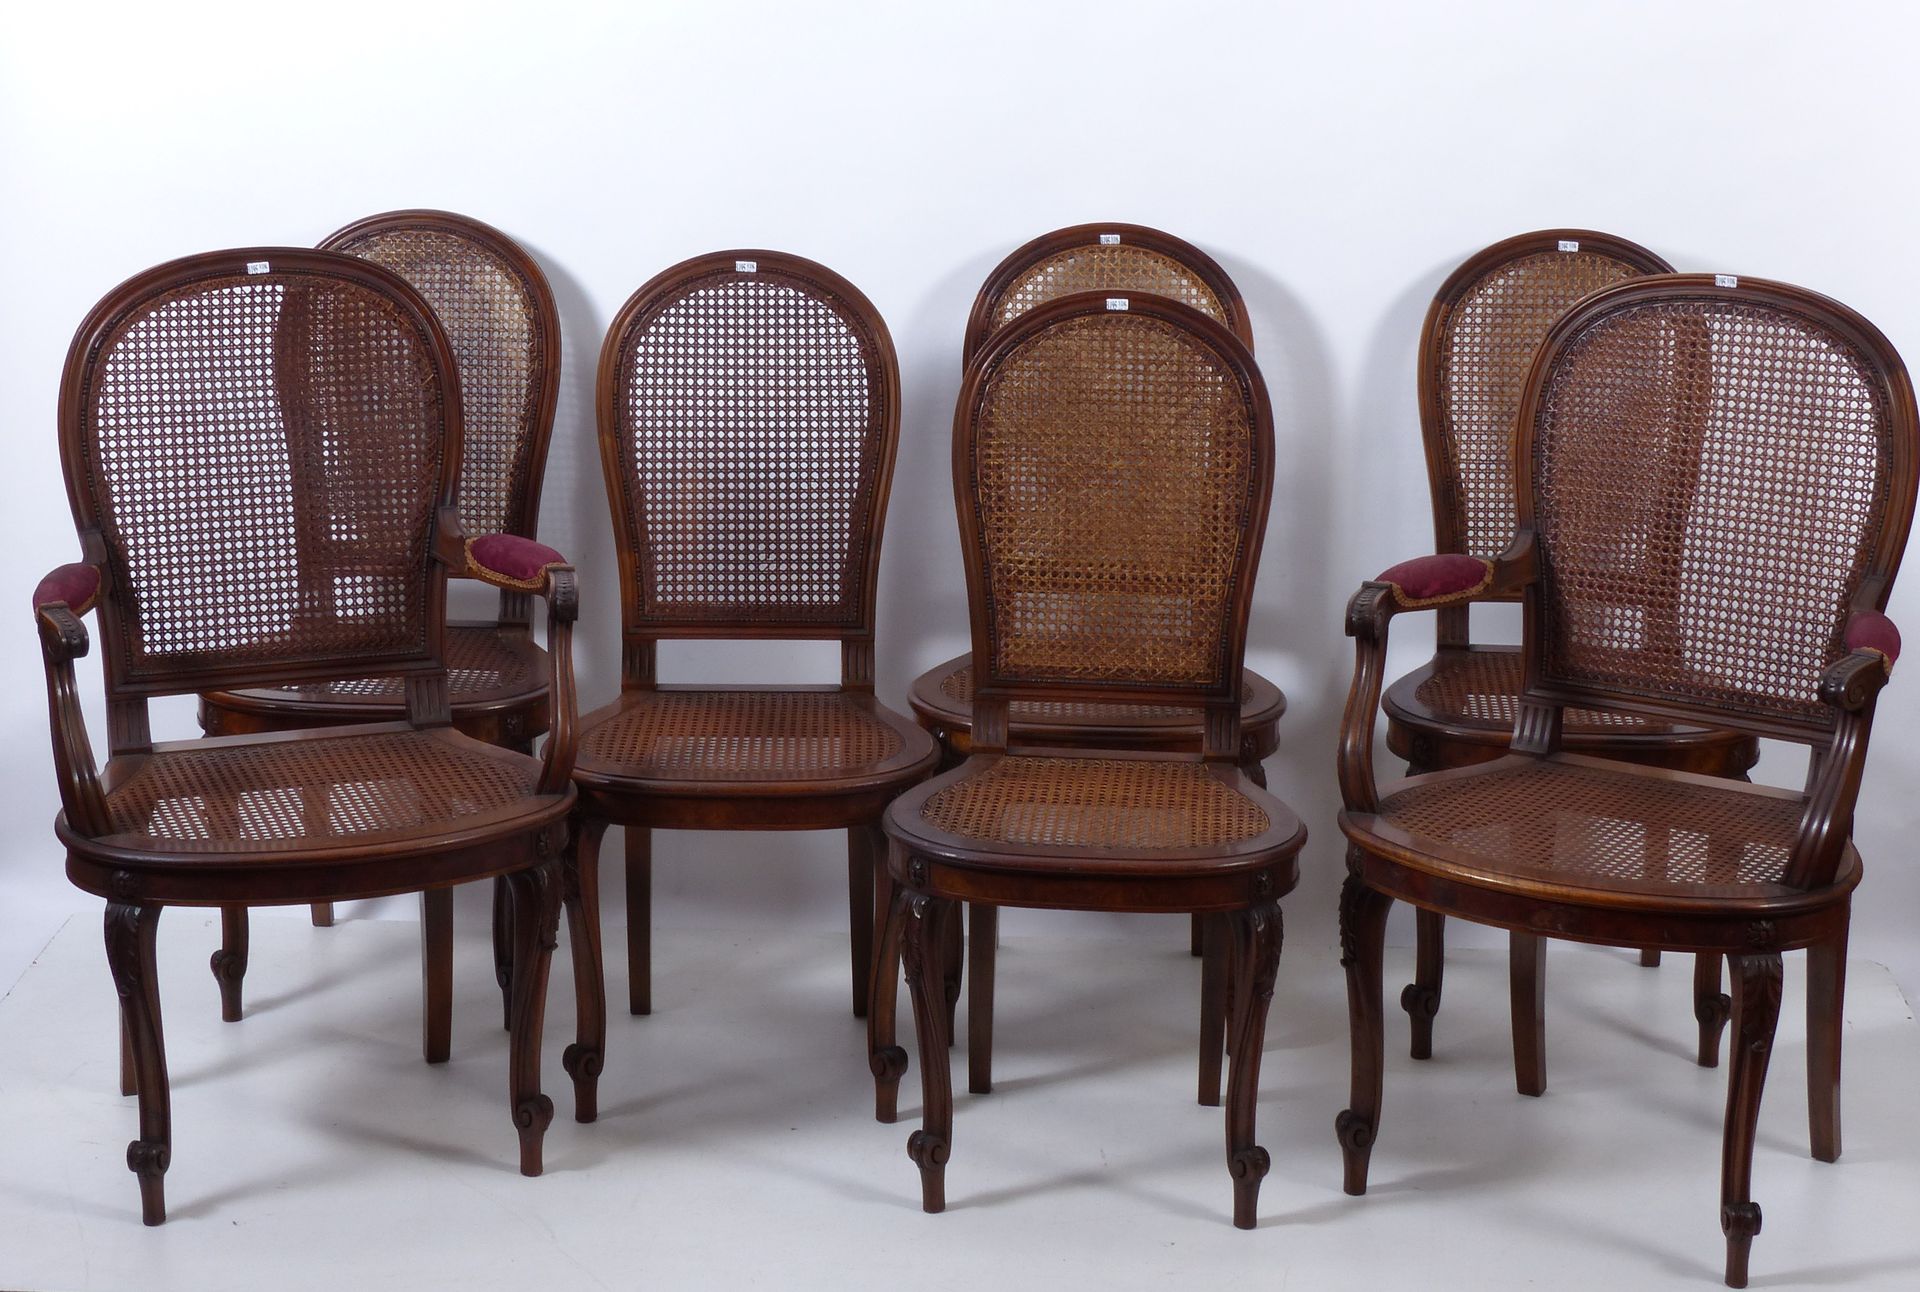 Null 拿破仑三世风格的8把椅子和2把扶手椅套装，带藤条靠背。